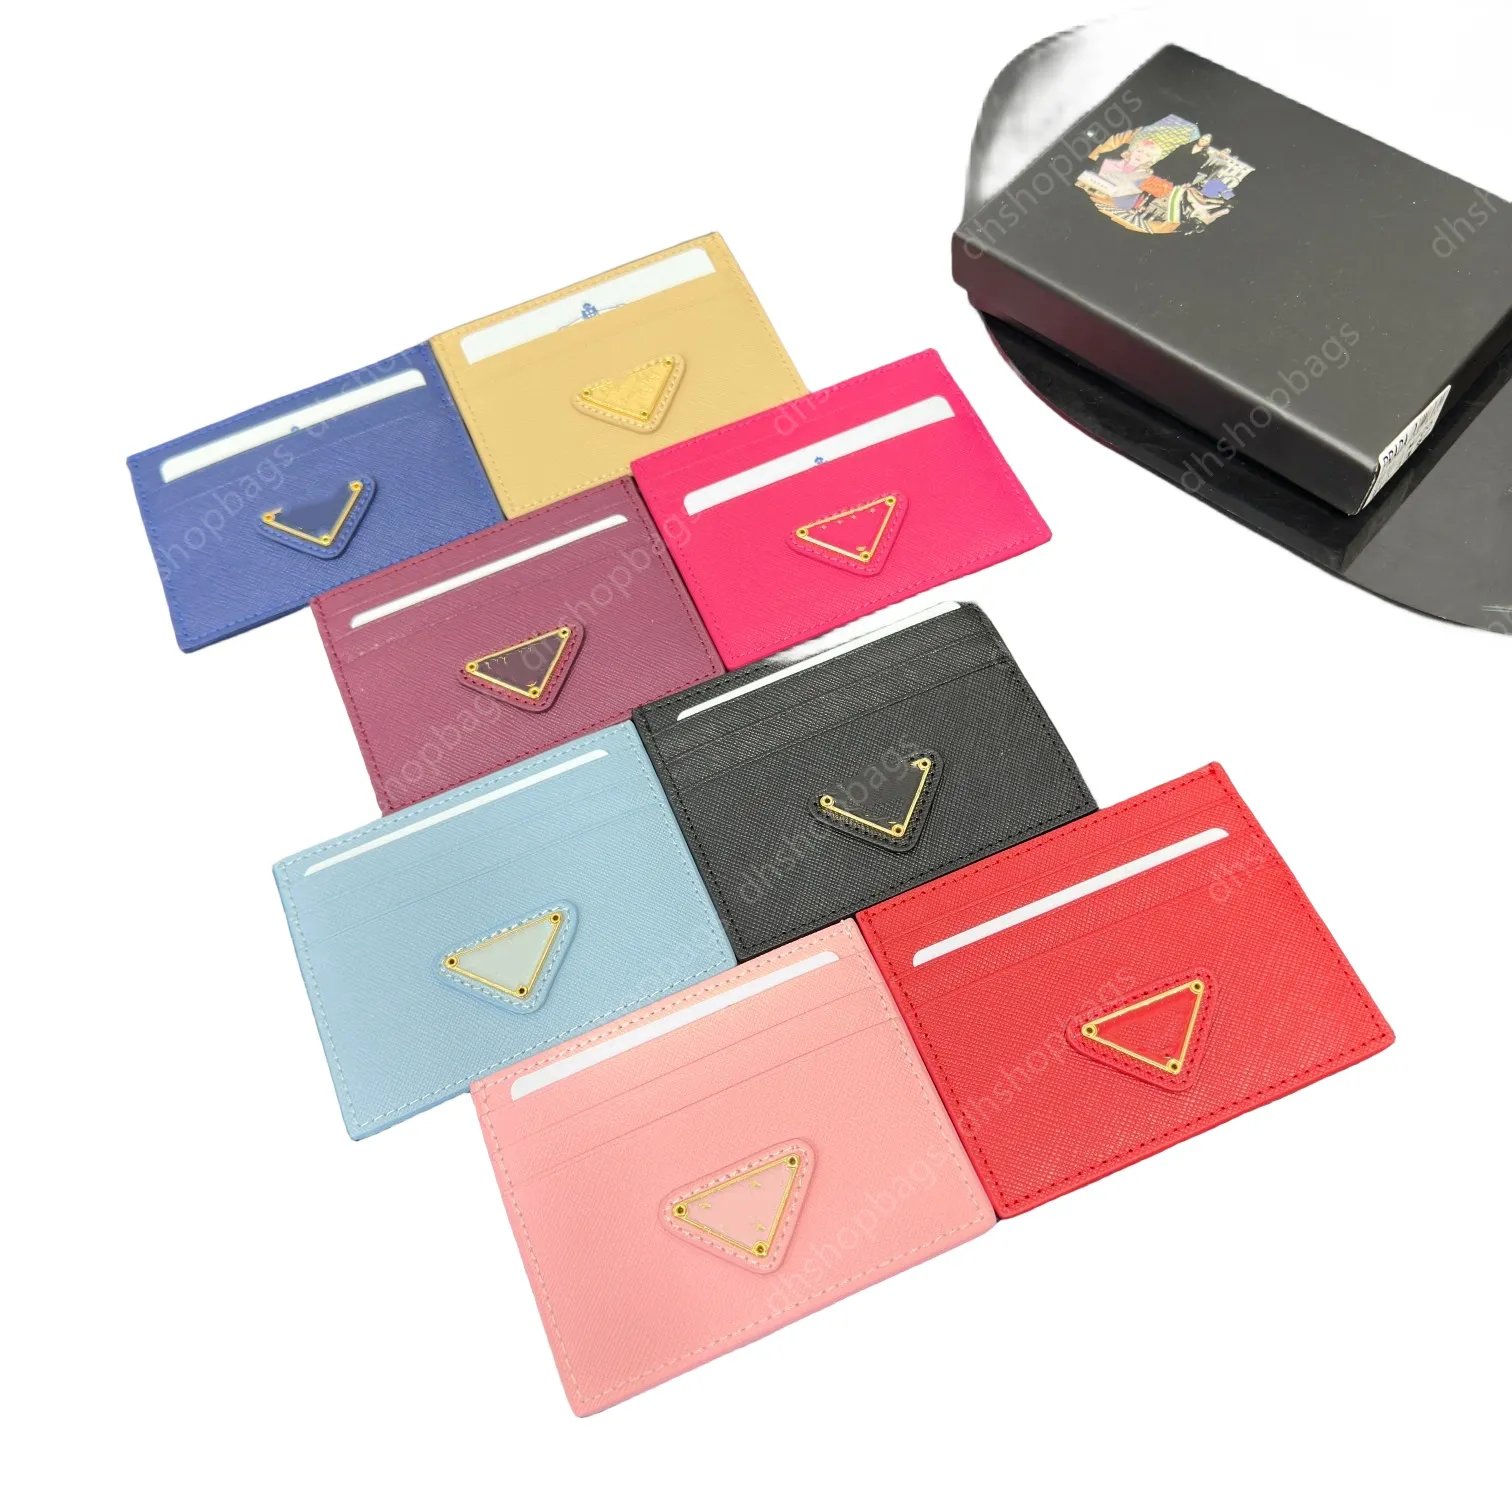 Äkta läderkortshållare Designer Plånböcker Luxury Fashion Coin Purses 7A Kvalitetskorthållare Key Pouch Women Mens Bag Wallet Passport Holder Keychain Wristlets